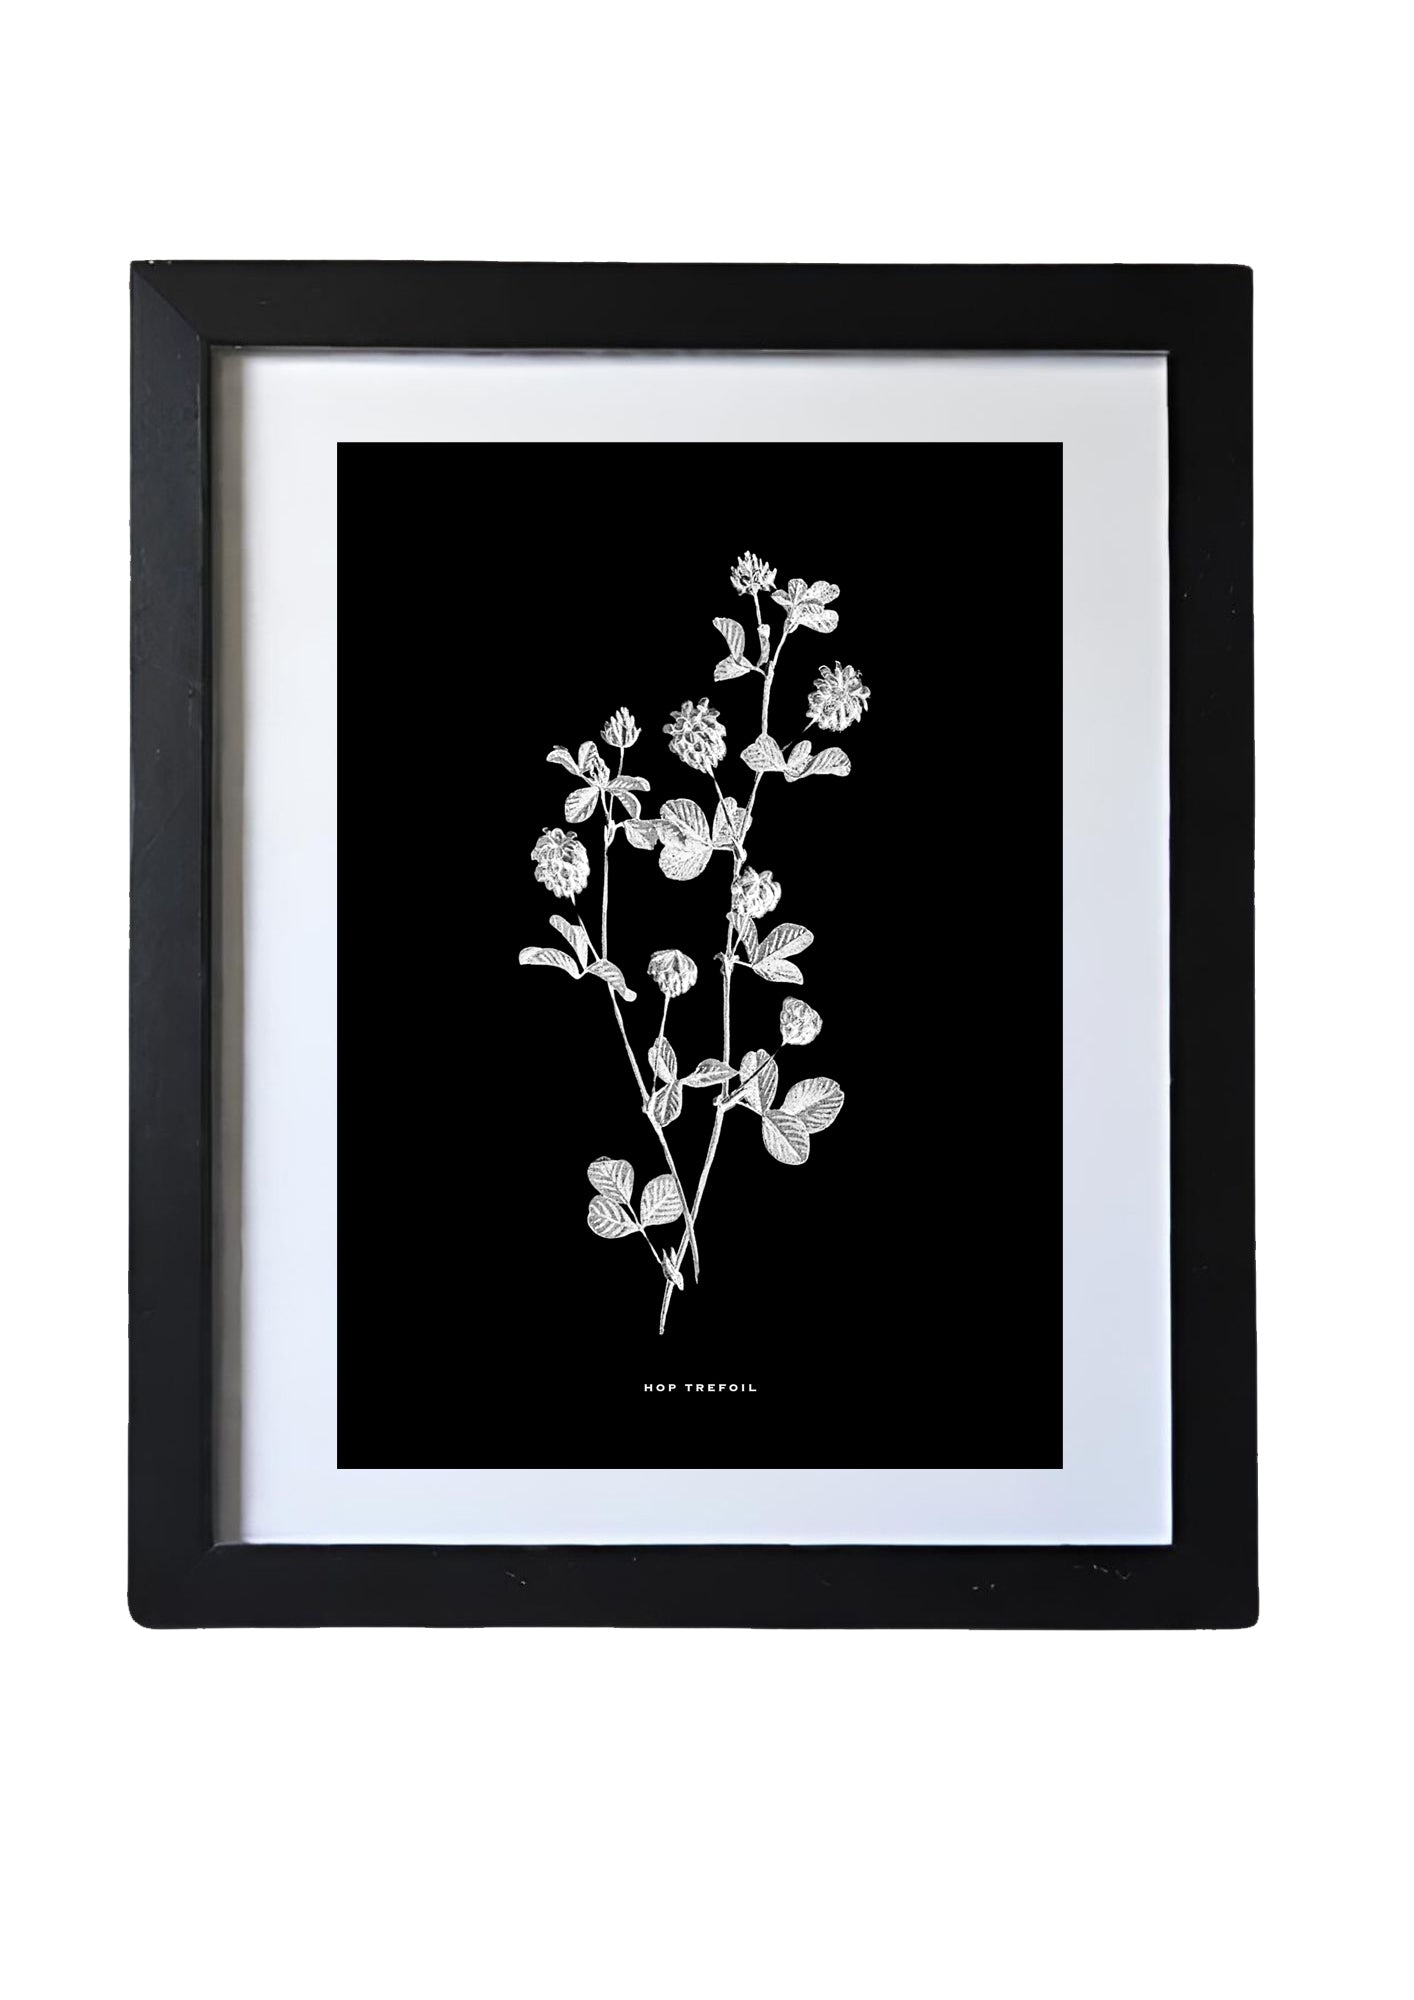 Black & White Framed Vintage Botanical Floral Art Prints: Set Of Six